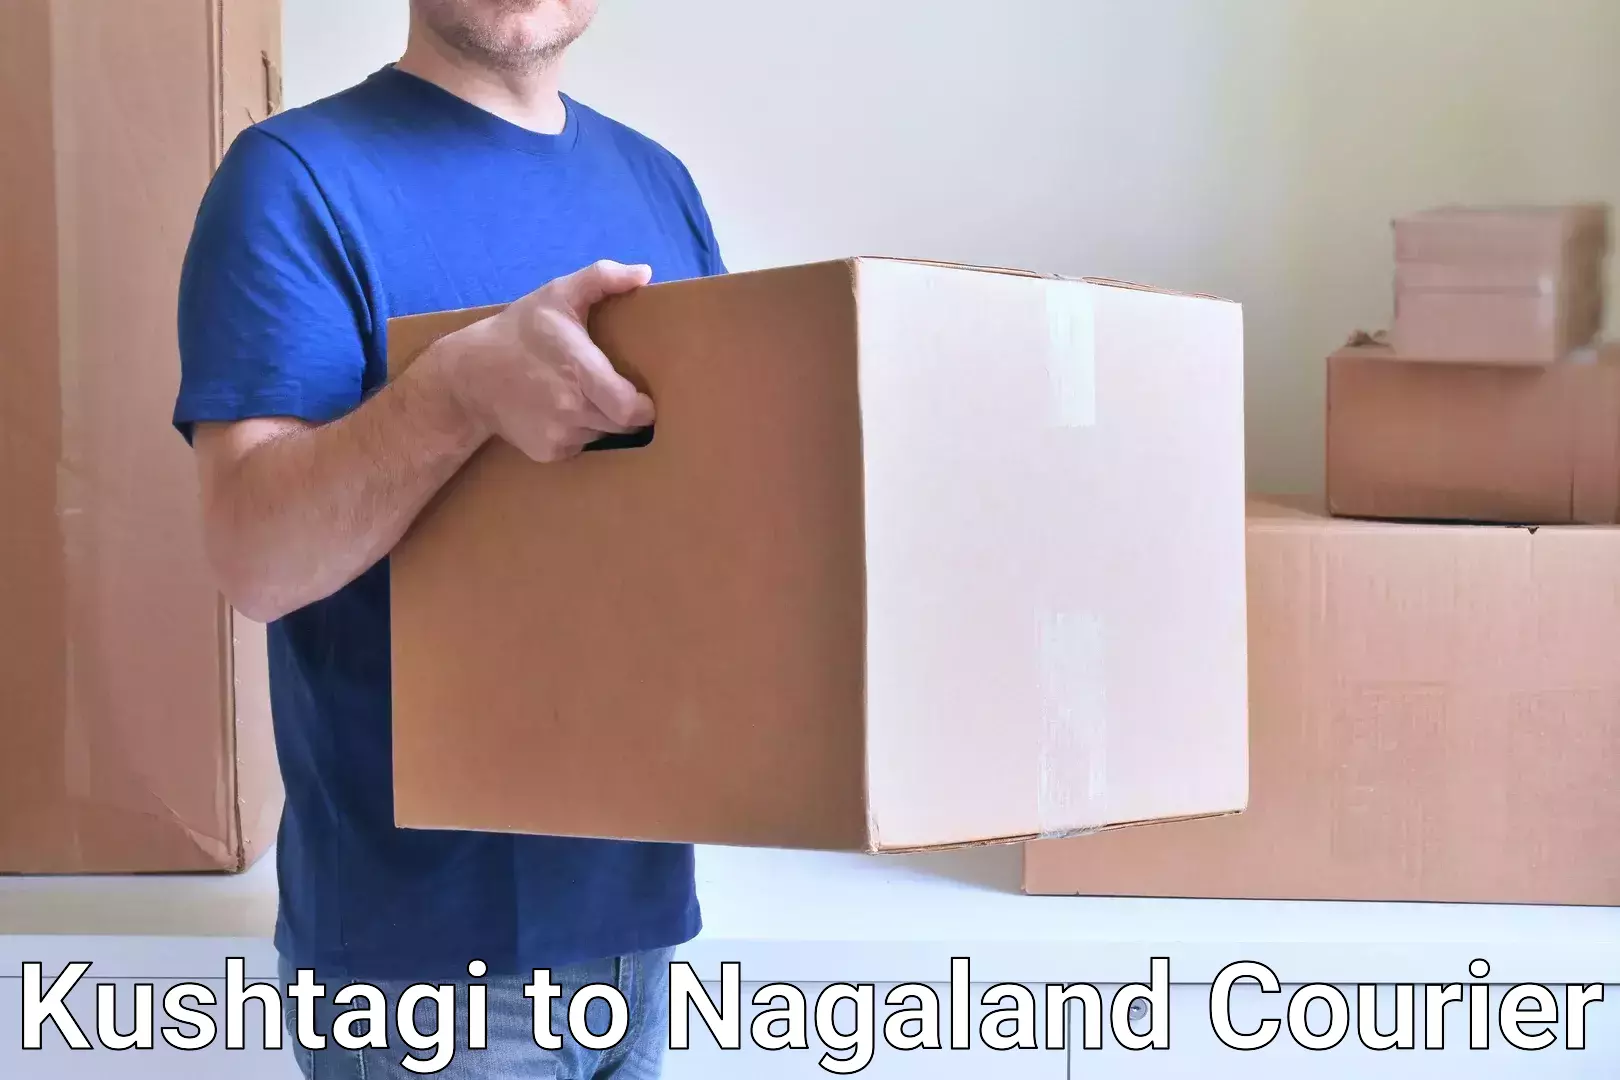 Rapid freight solutions Kushtagi to Nagaland